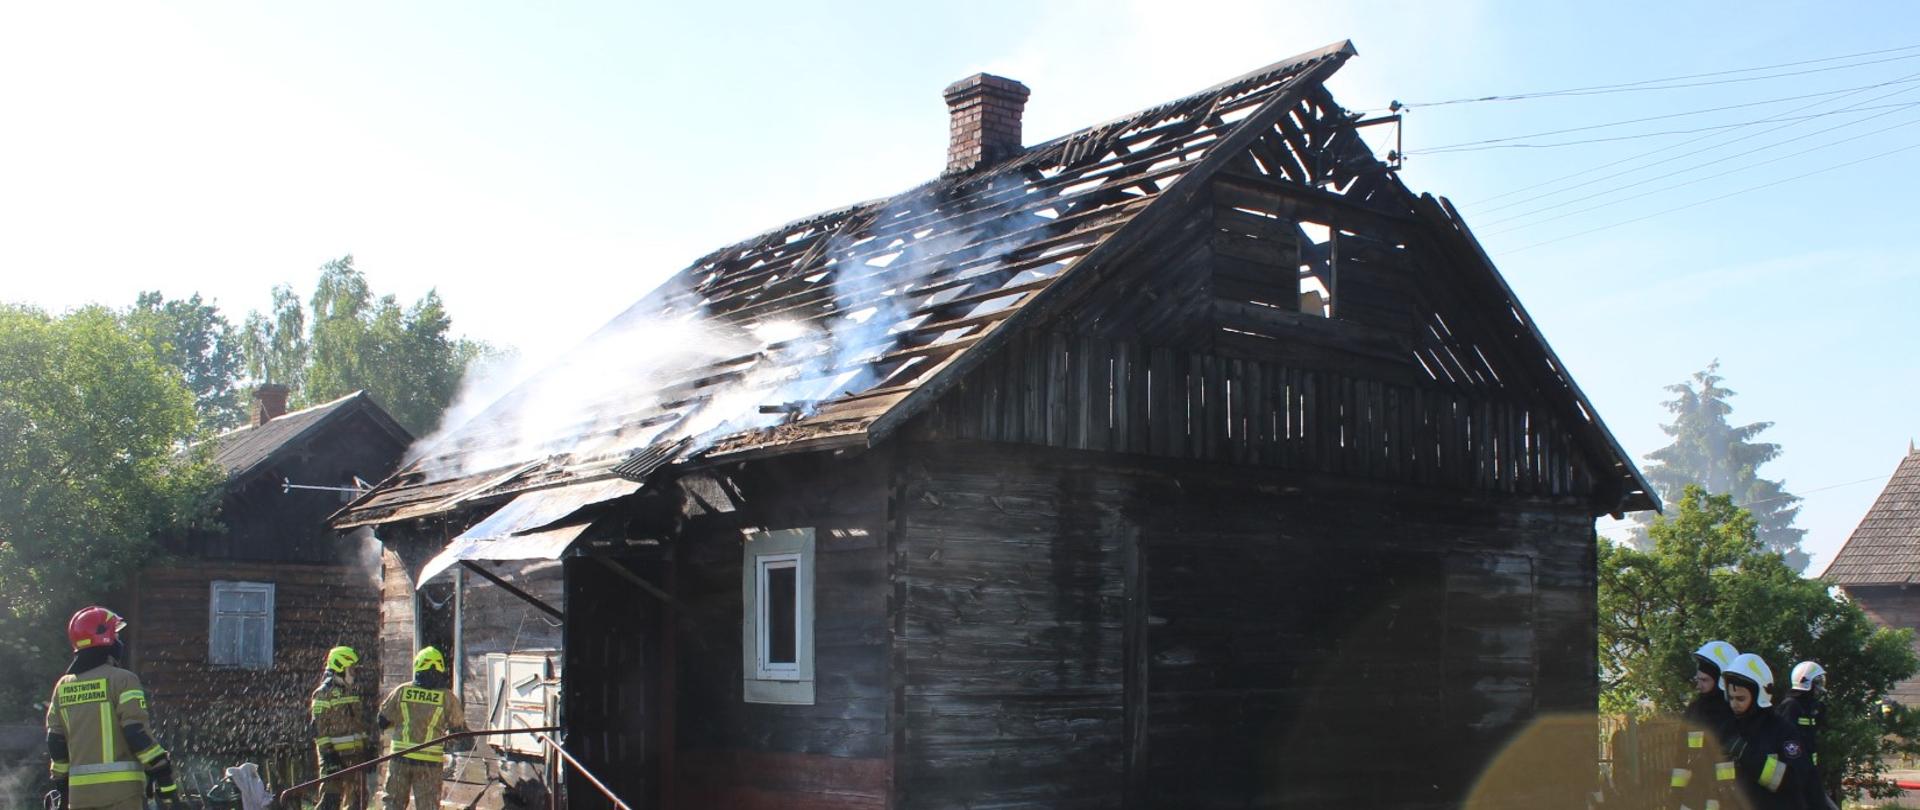 Drewniany budynek mieszkalny. Konstrukcja dachu zniszczona. Z poddasza wydobywa się dym. Przed budynkiem strażacy biorący udział w akcji gaśniczej.